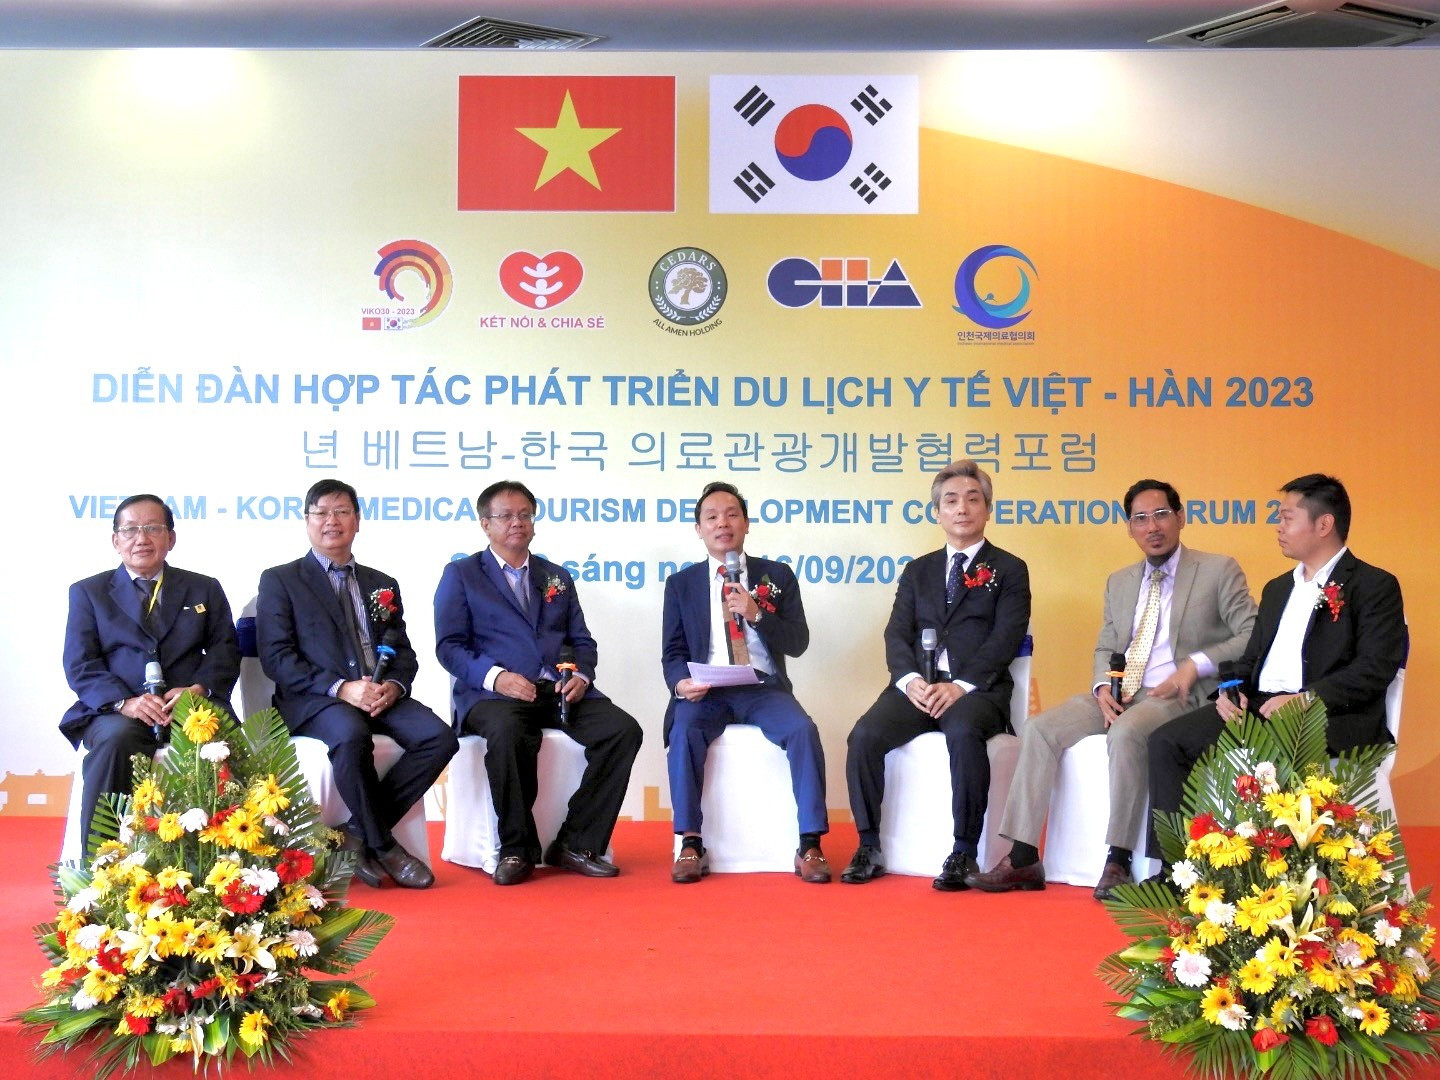 Diễn đàn hợp tác phát triển du lịch y tế Việt Nam – Hàn Quốc - 2